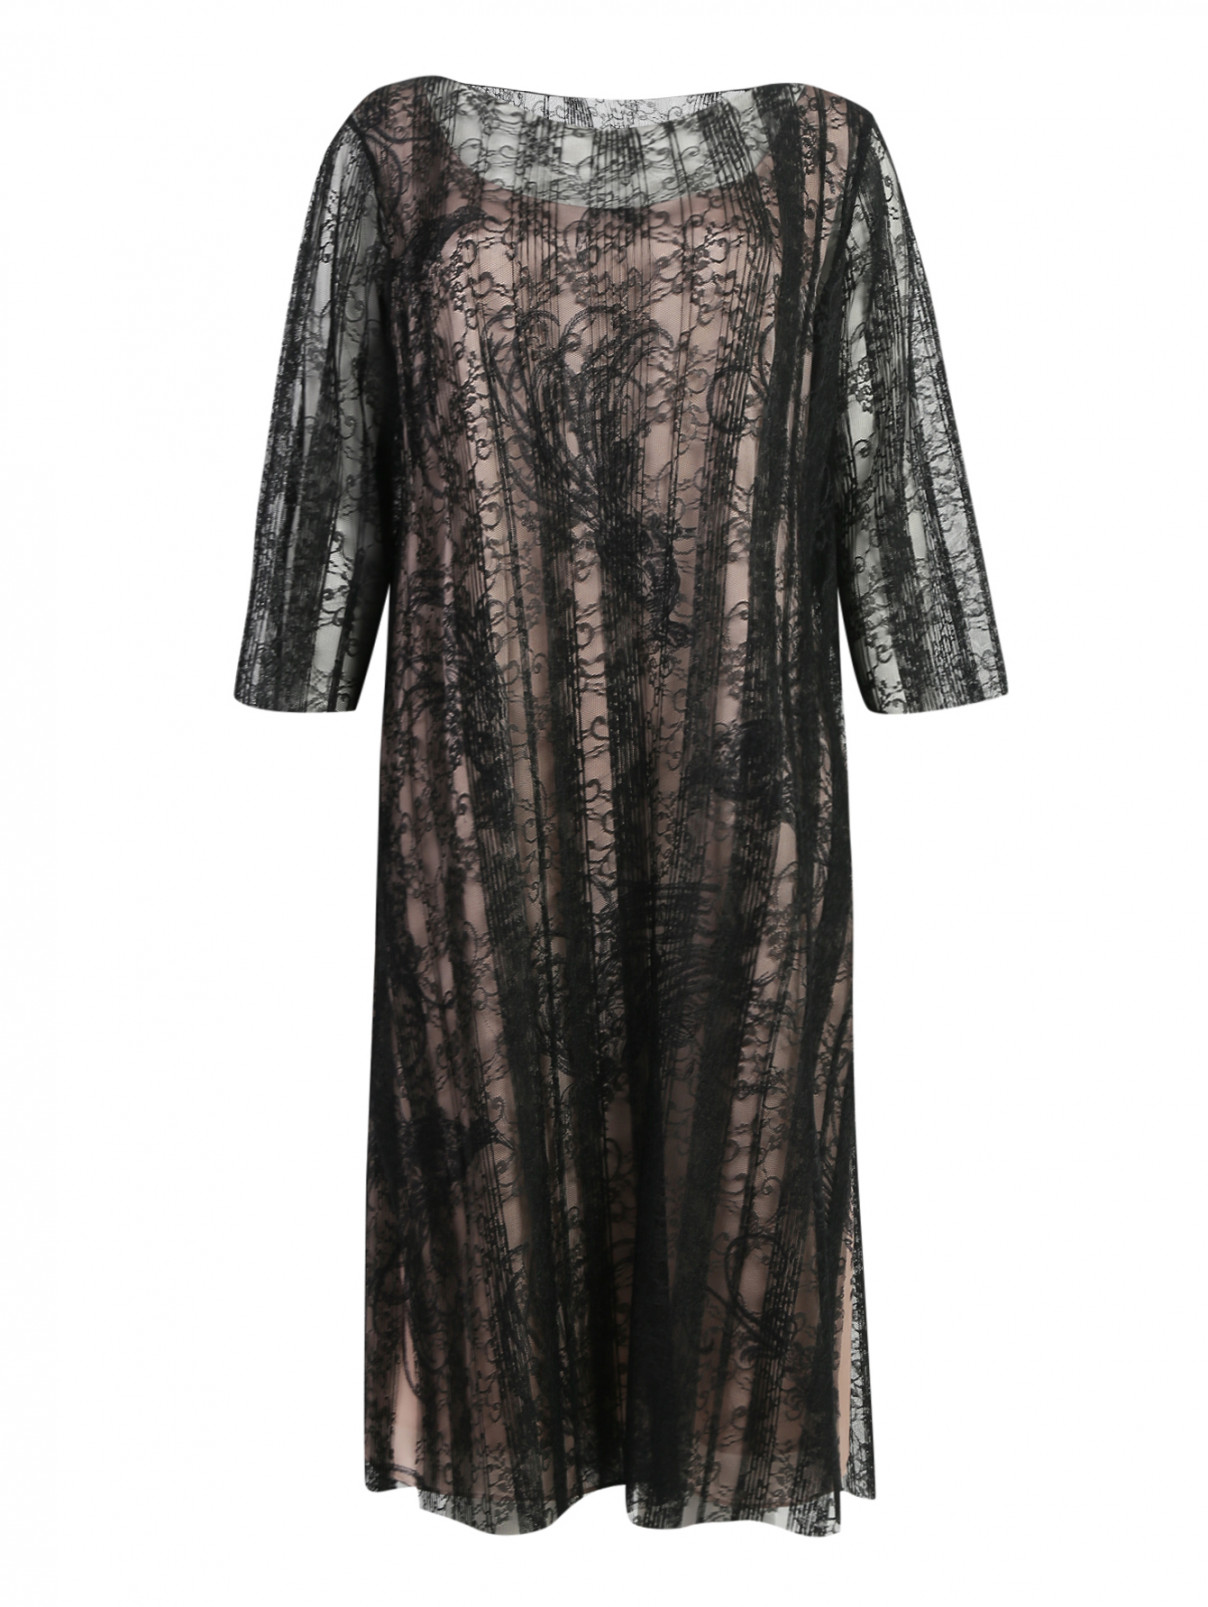 Полупрозрачное платье с контрастной подкладкой Marina Rinaldi  –  Общий вид  – Цвет:  Черный